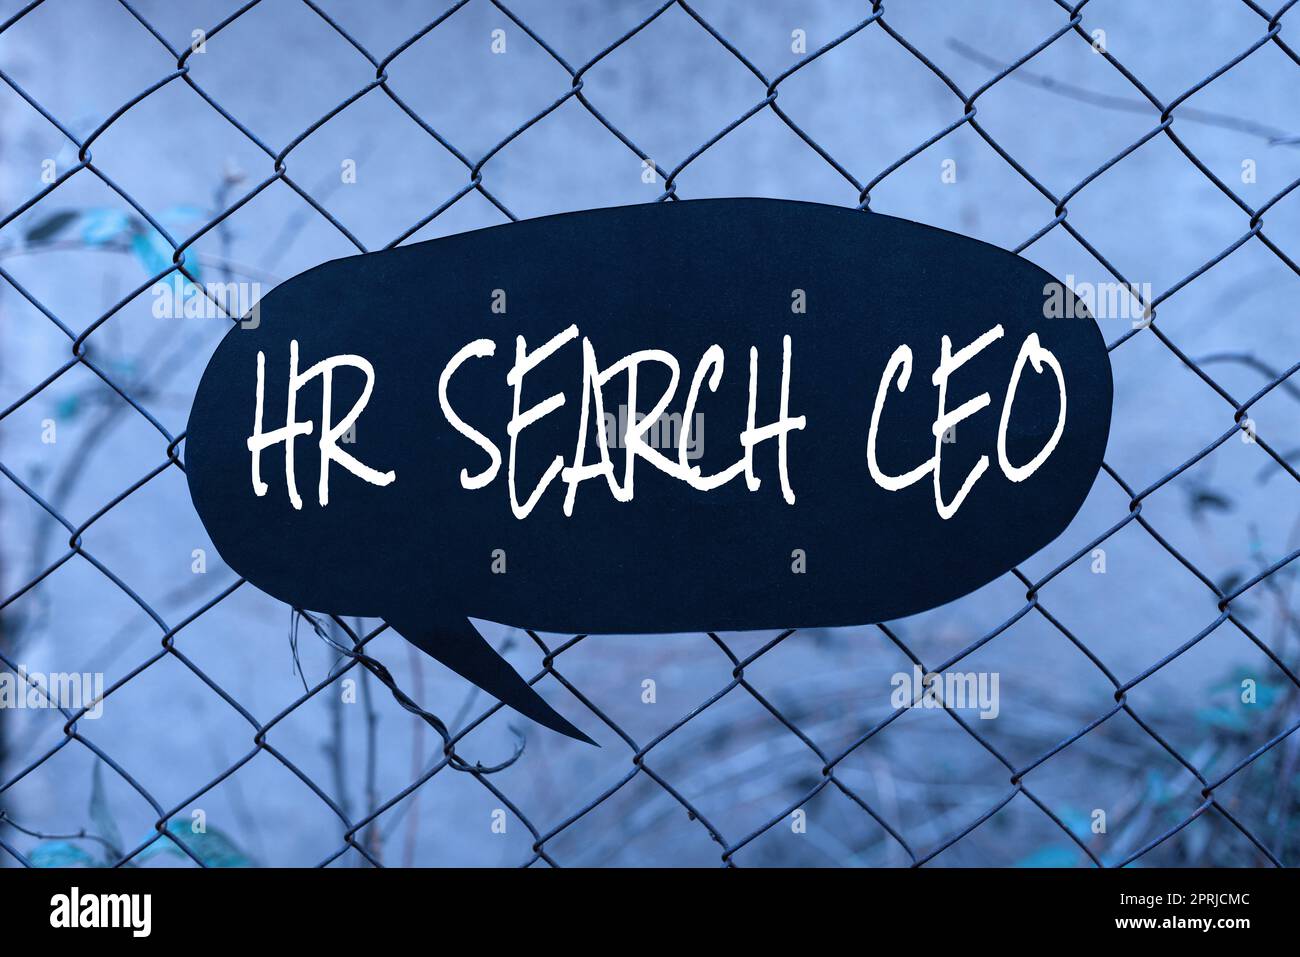 Affichage conceptuel HR Search CEO. Approche commerciale Ressources humaines à la recherche d'un nouveau Directeur général Banque D'Images